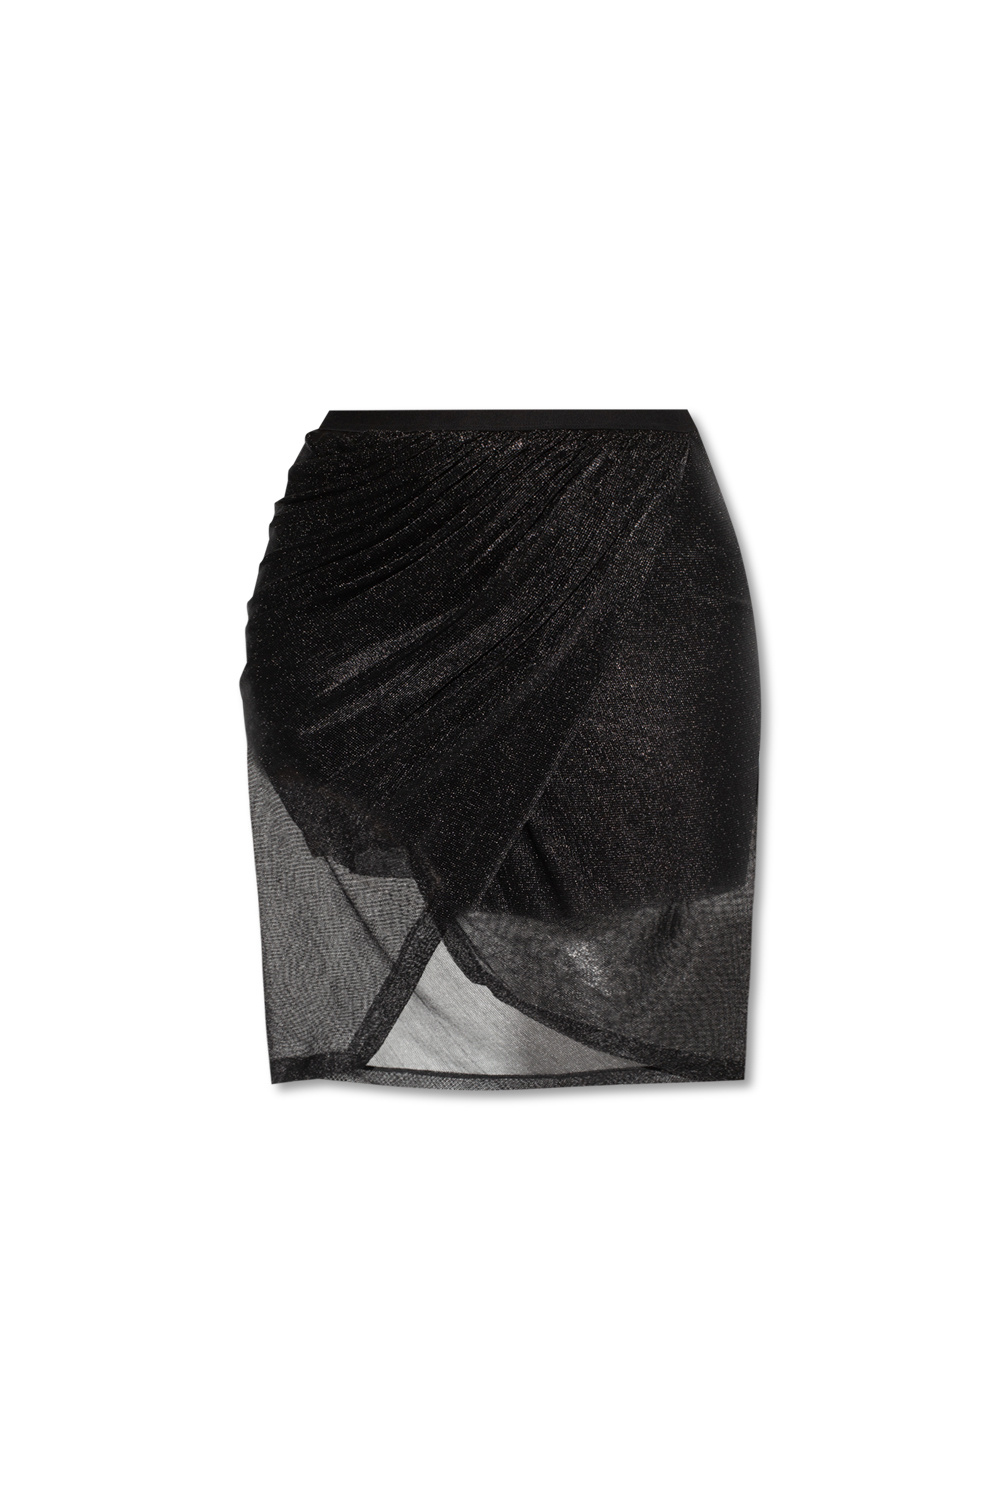 Boots / wellies ‘Vered’ asymmetrical skirt